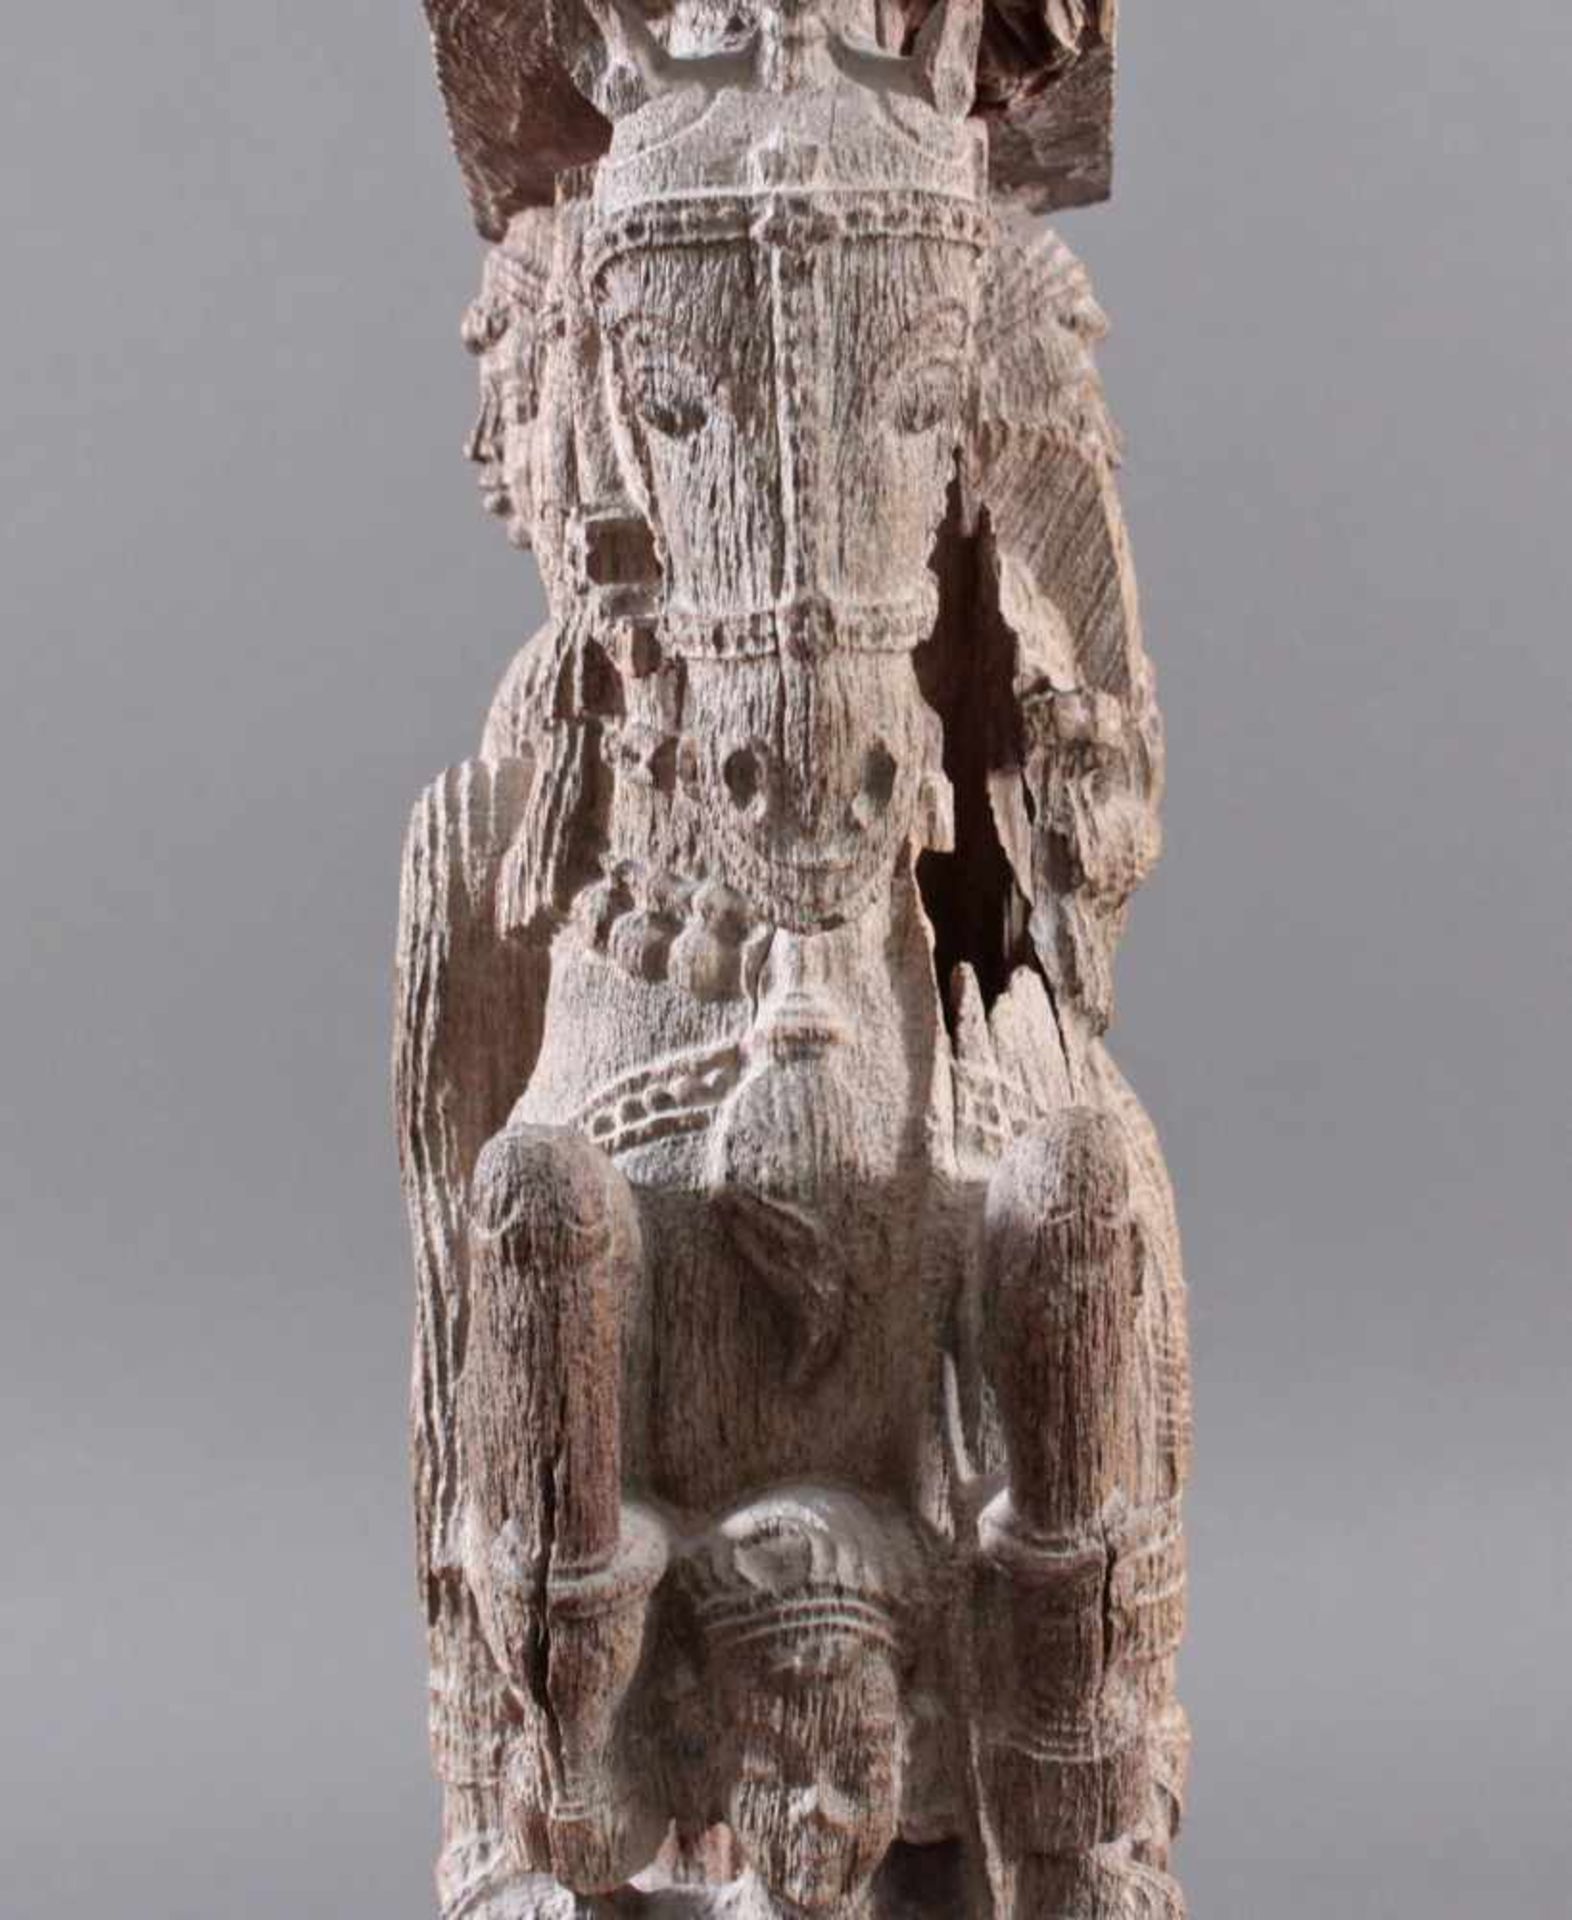 Holzplastik eines Reiters auf einem Pferd, Indien wohl Orissa 15./16. Jh. - Bild 7 aus 13